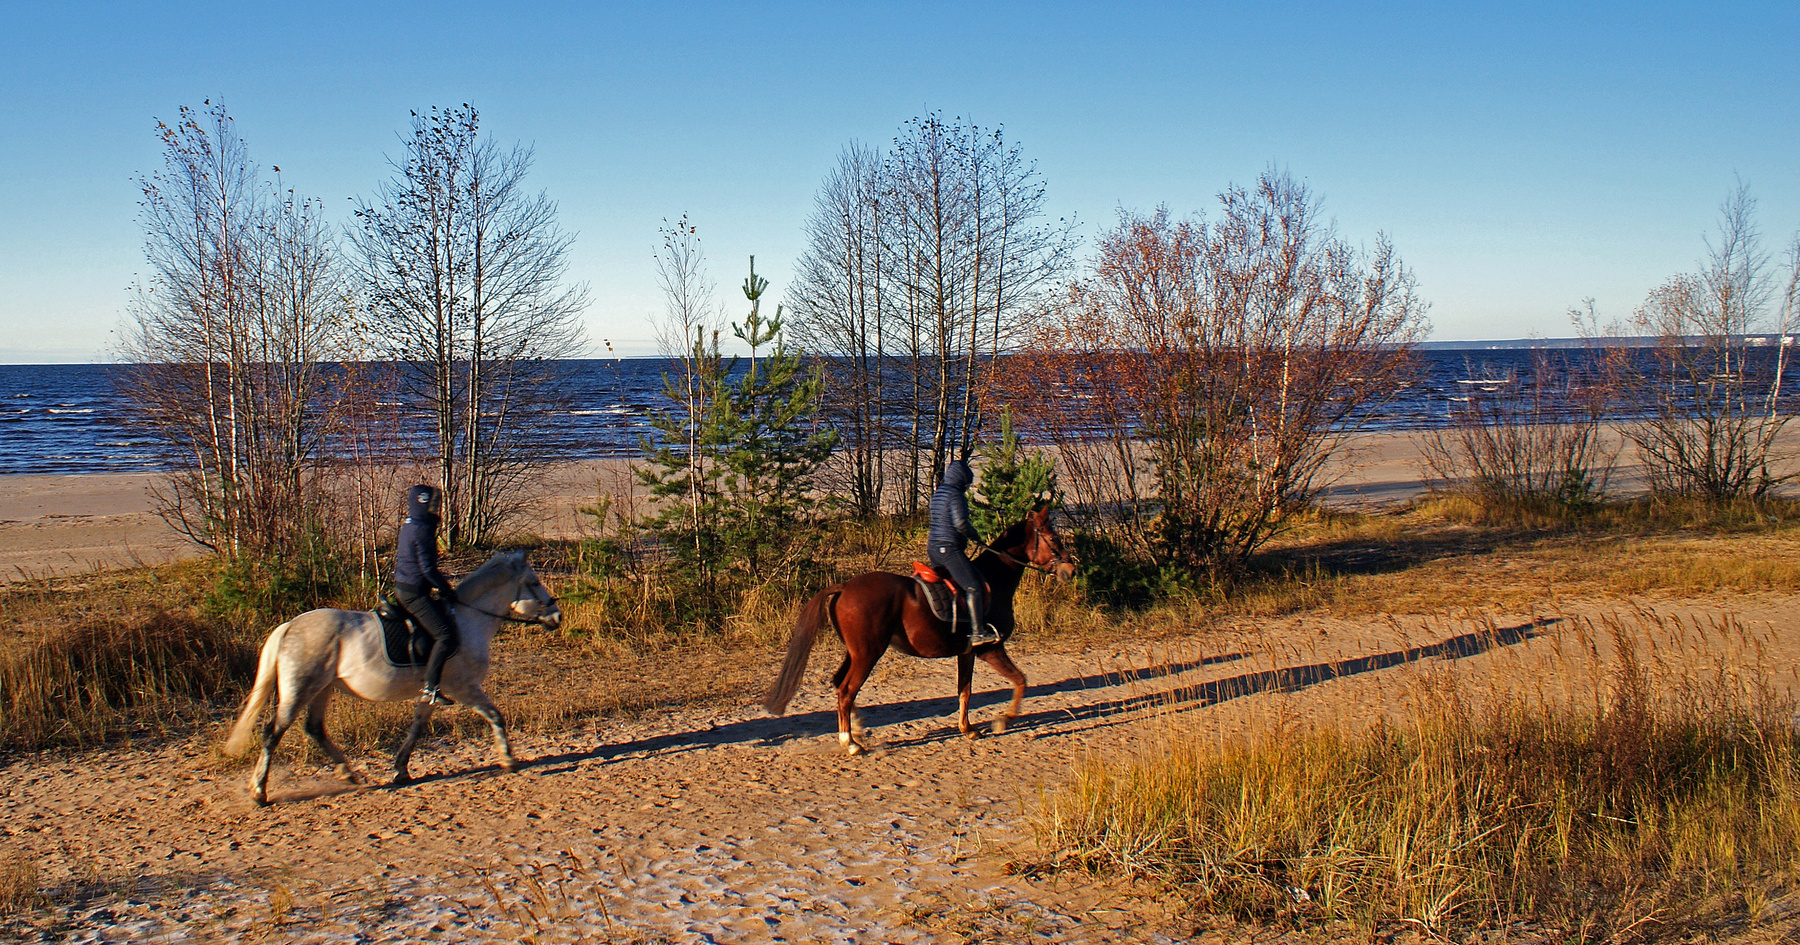 Осенняя прогулка в дюнах пляж песок дюны финский залив лошади прогулки осень девушки